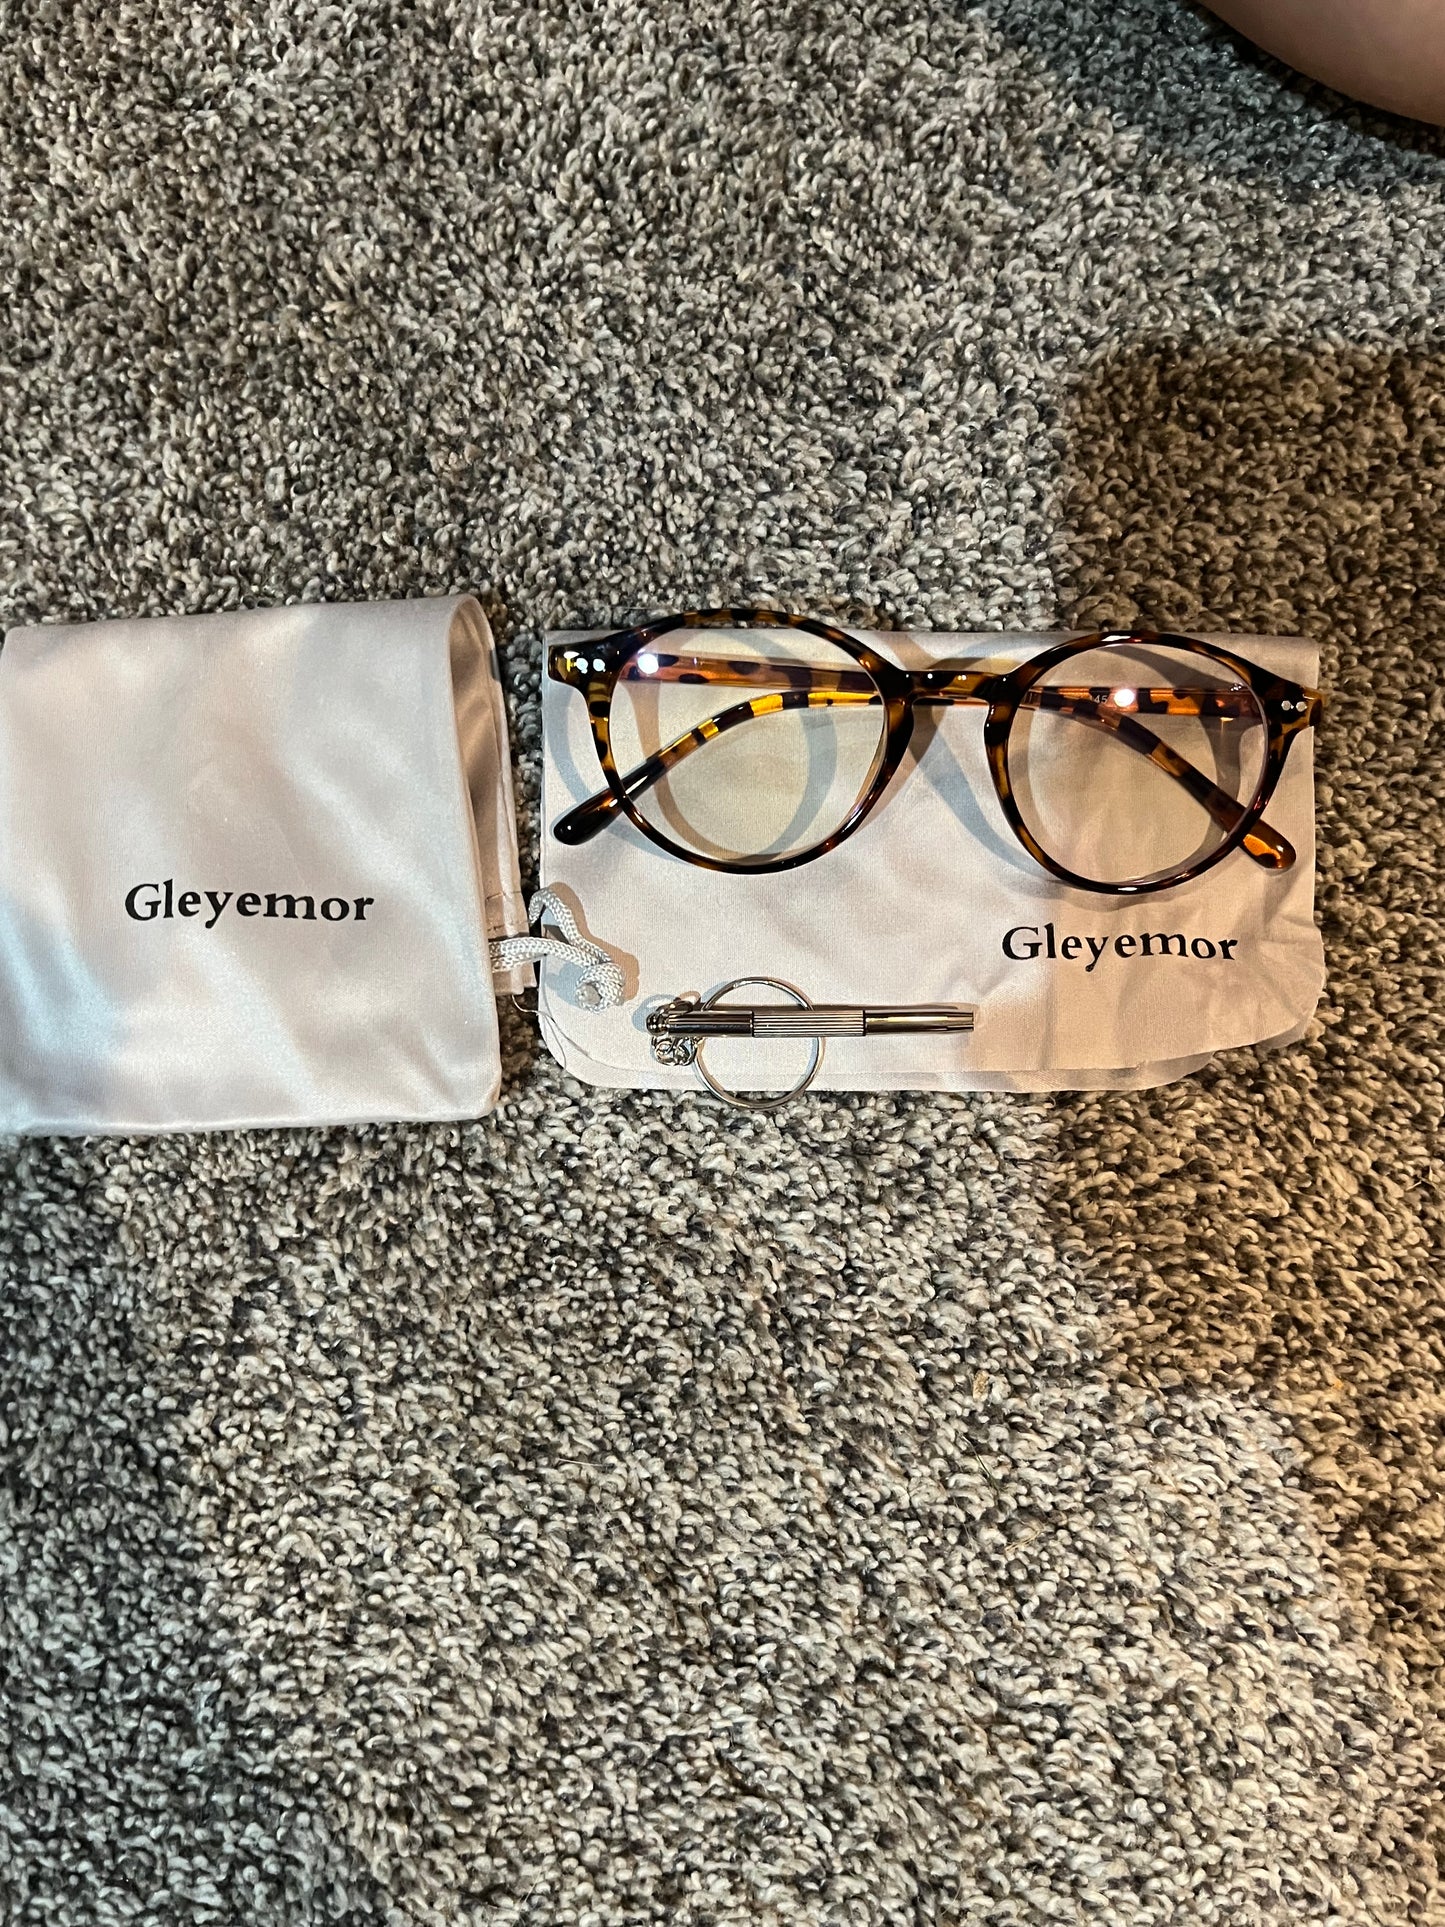 Gleyemor Blue Light Glasses for Men Women, Vintage Round Frame Computer Eyeglasses